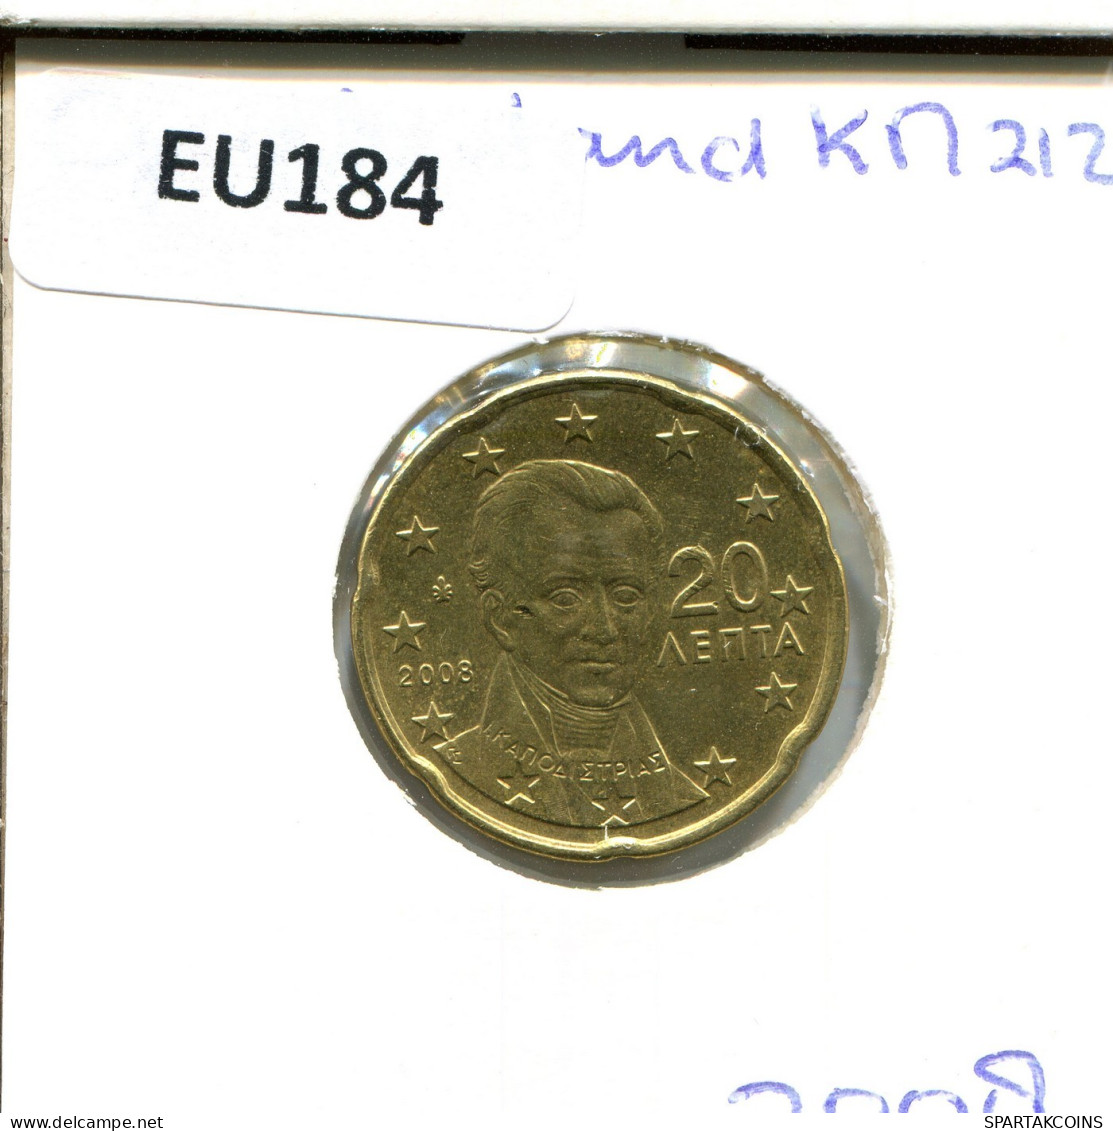 20 EURO CENTS 2008 GREECE Coin #EU184.U.A - Greece